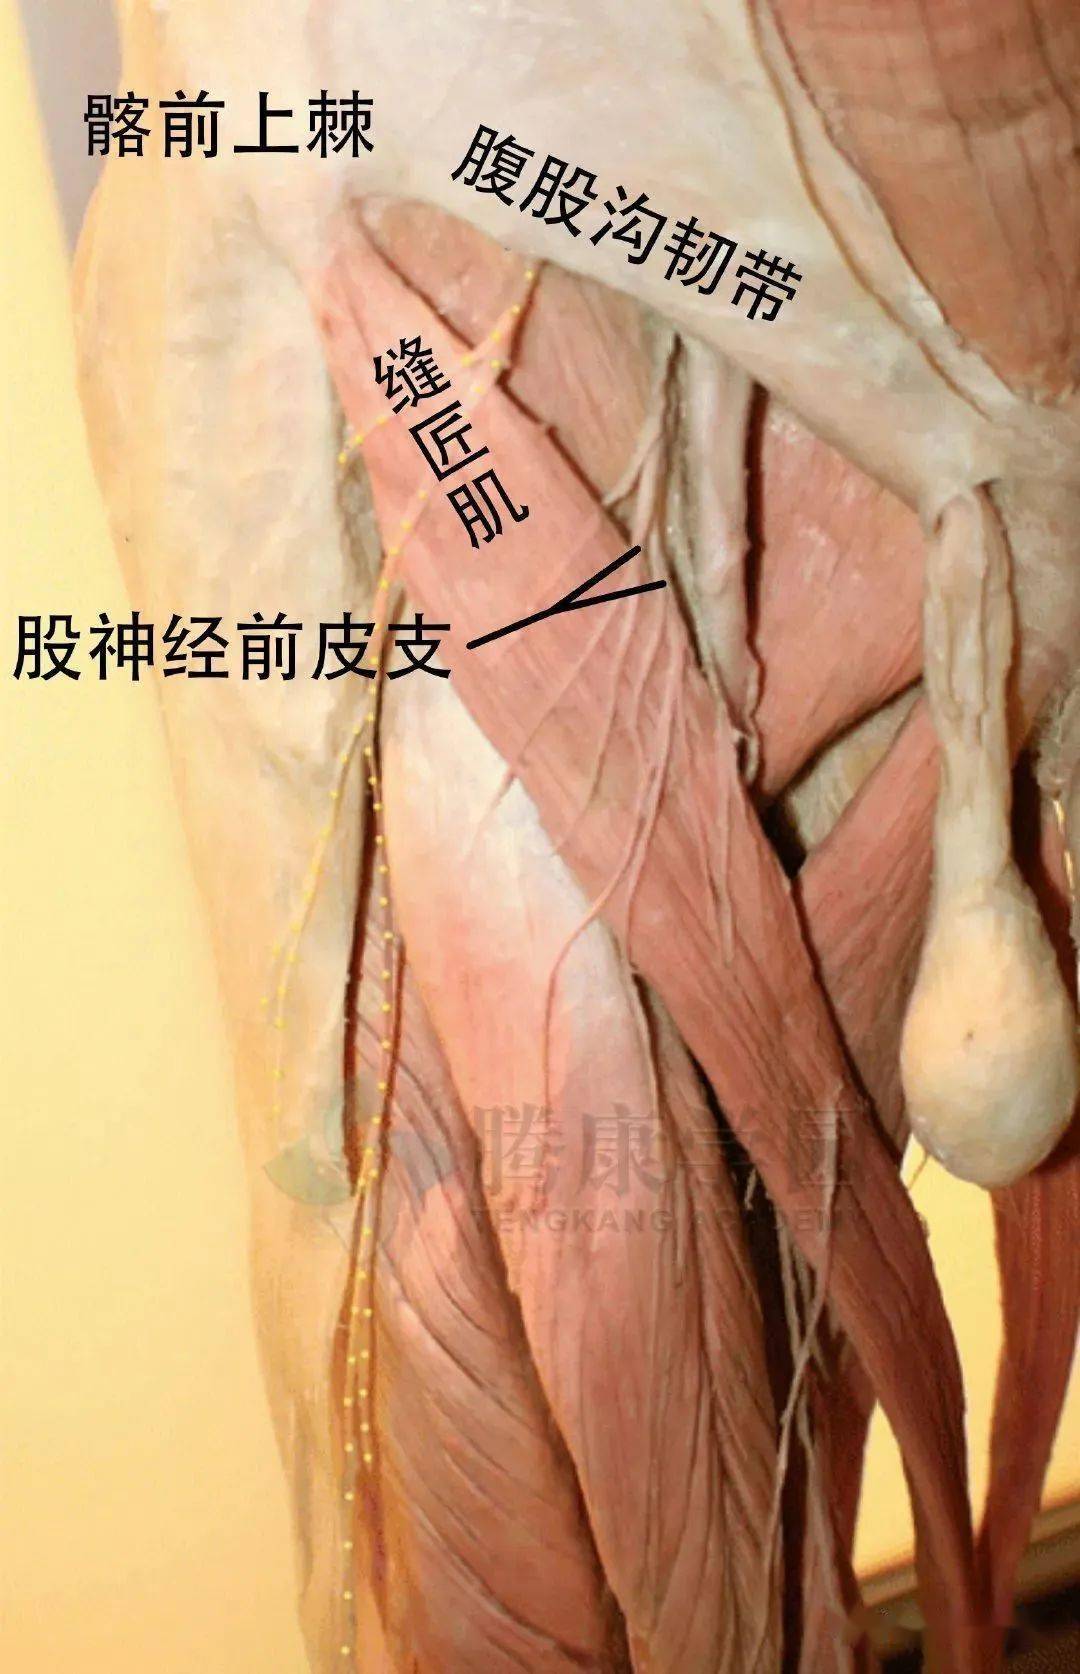 在腹股沟韧带下方,刺穿阔筋膜(通常是缝匠肌)约 7